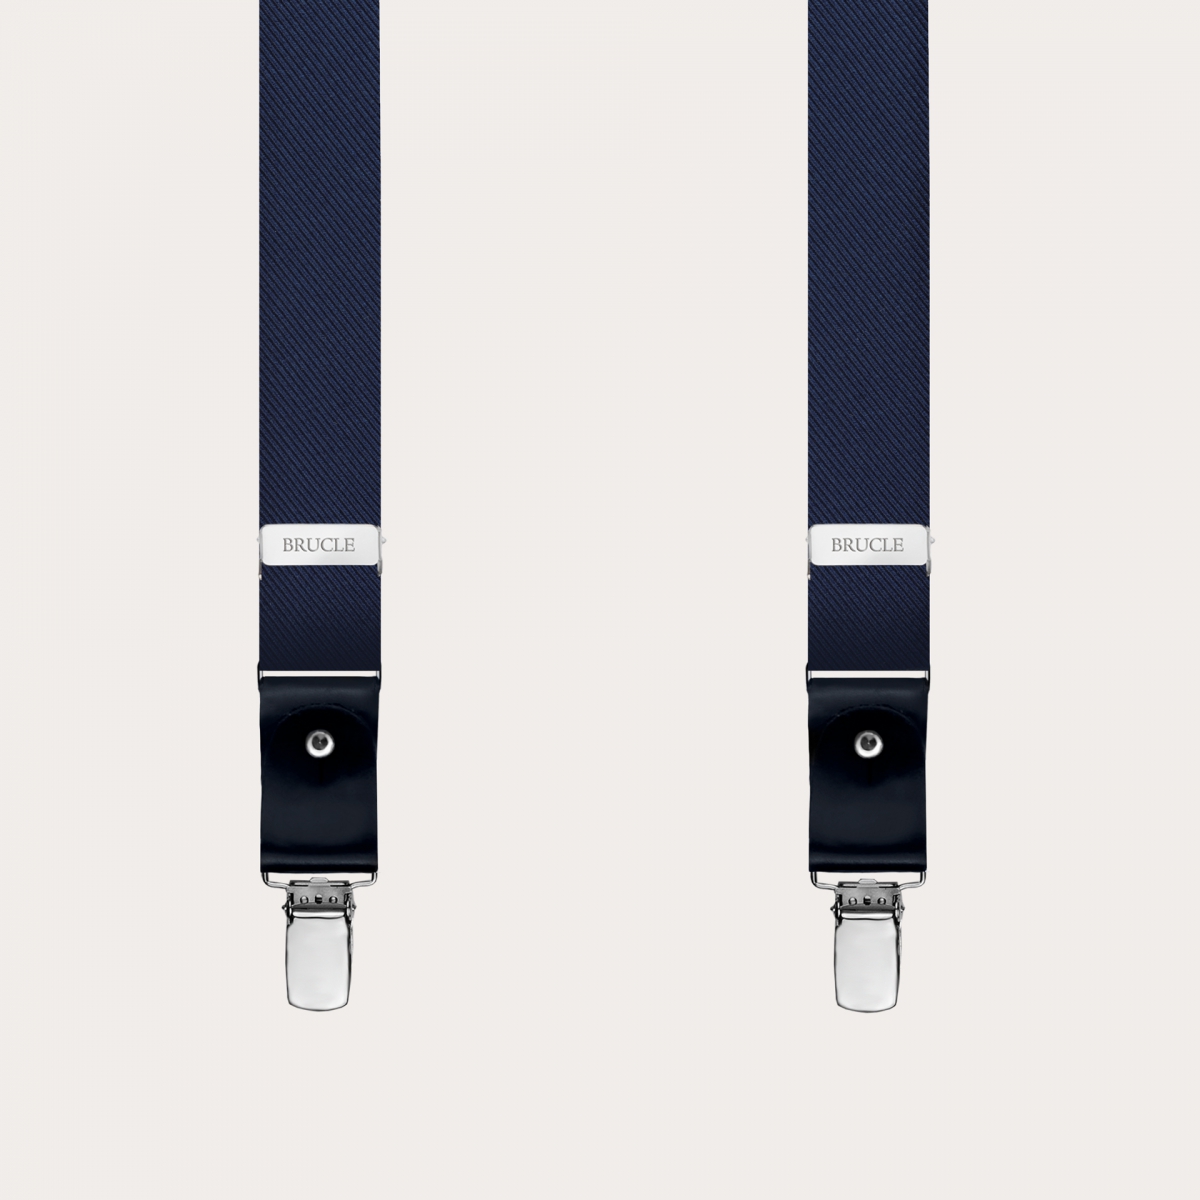 BRUCLE Formal skinny Y-shape pure silk suspenders, navy blue, nickel free